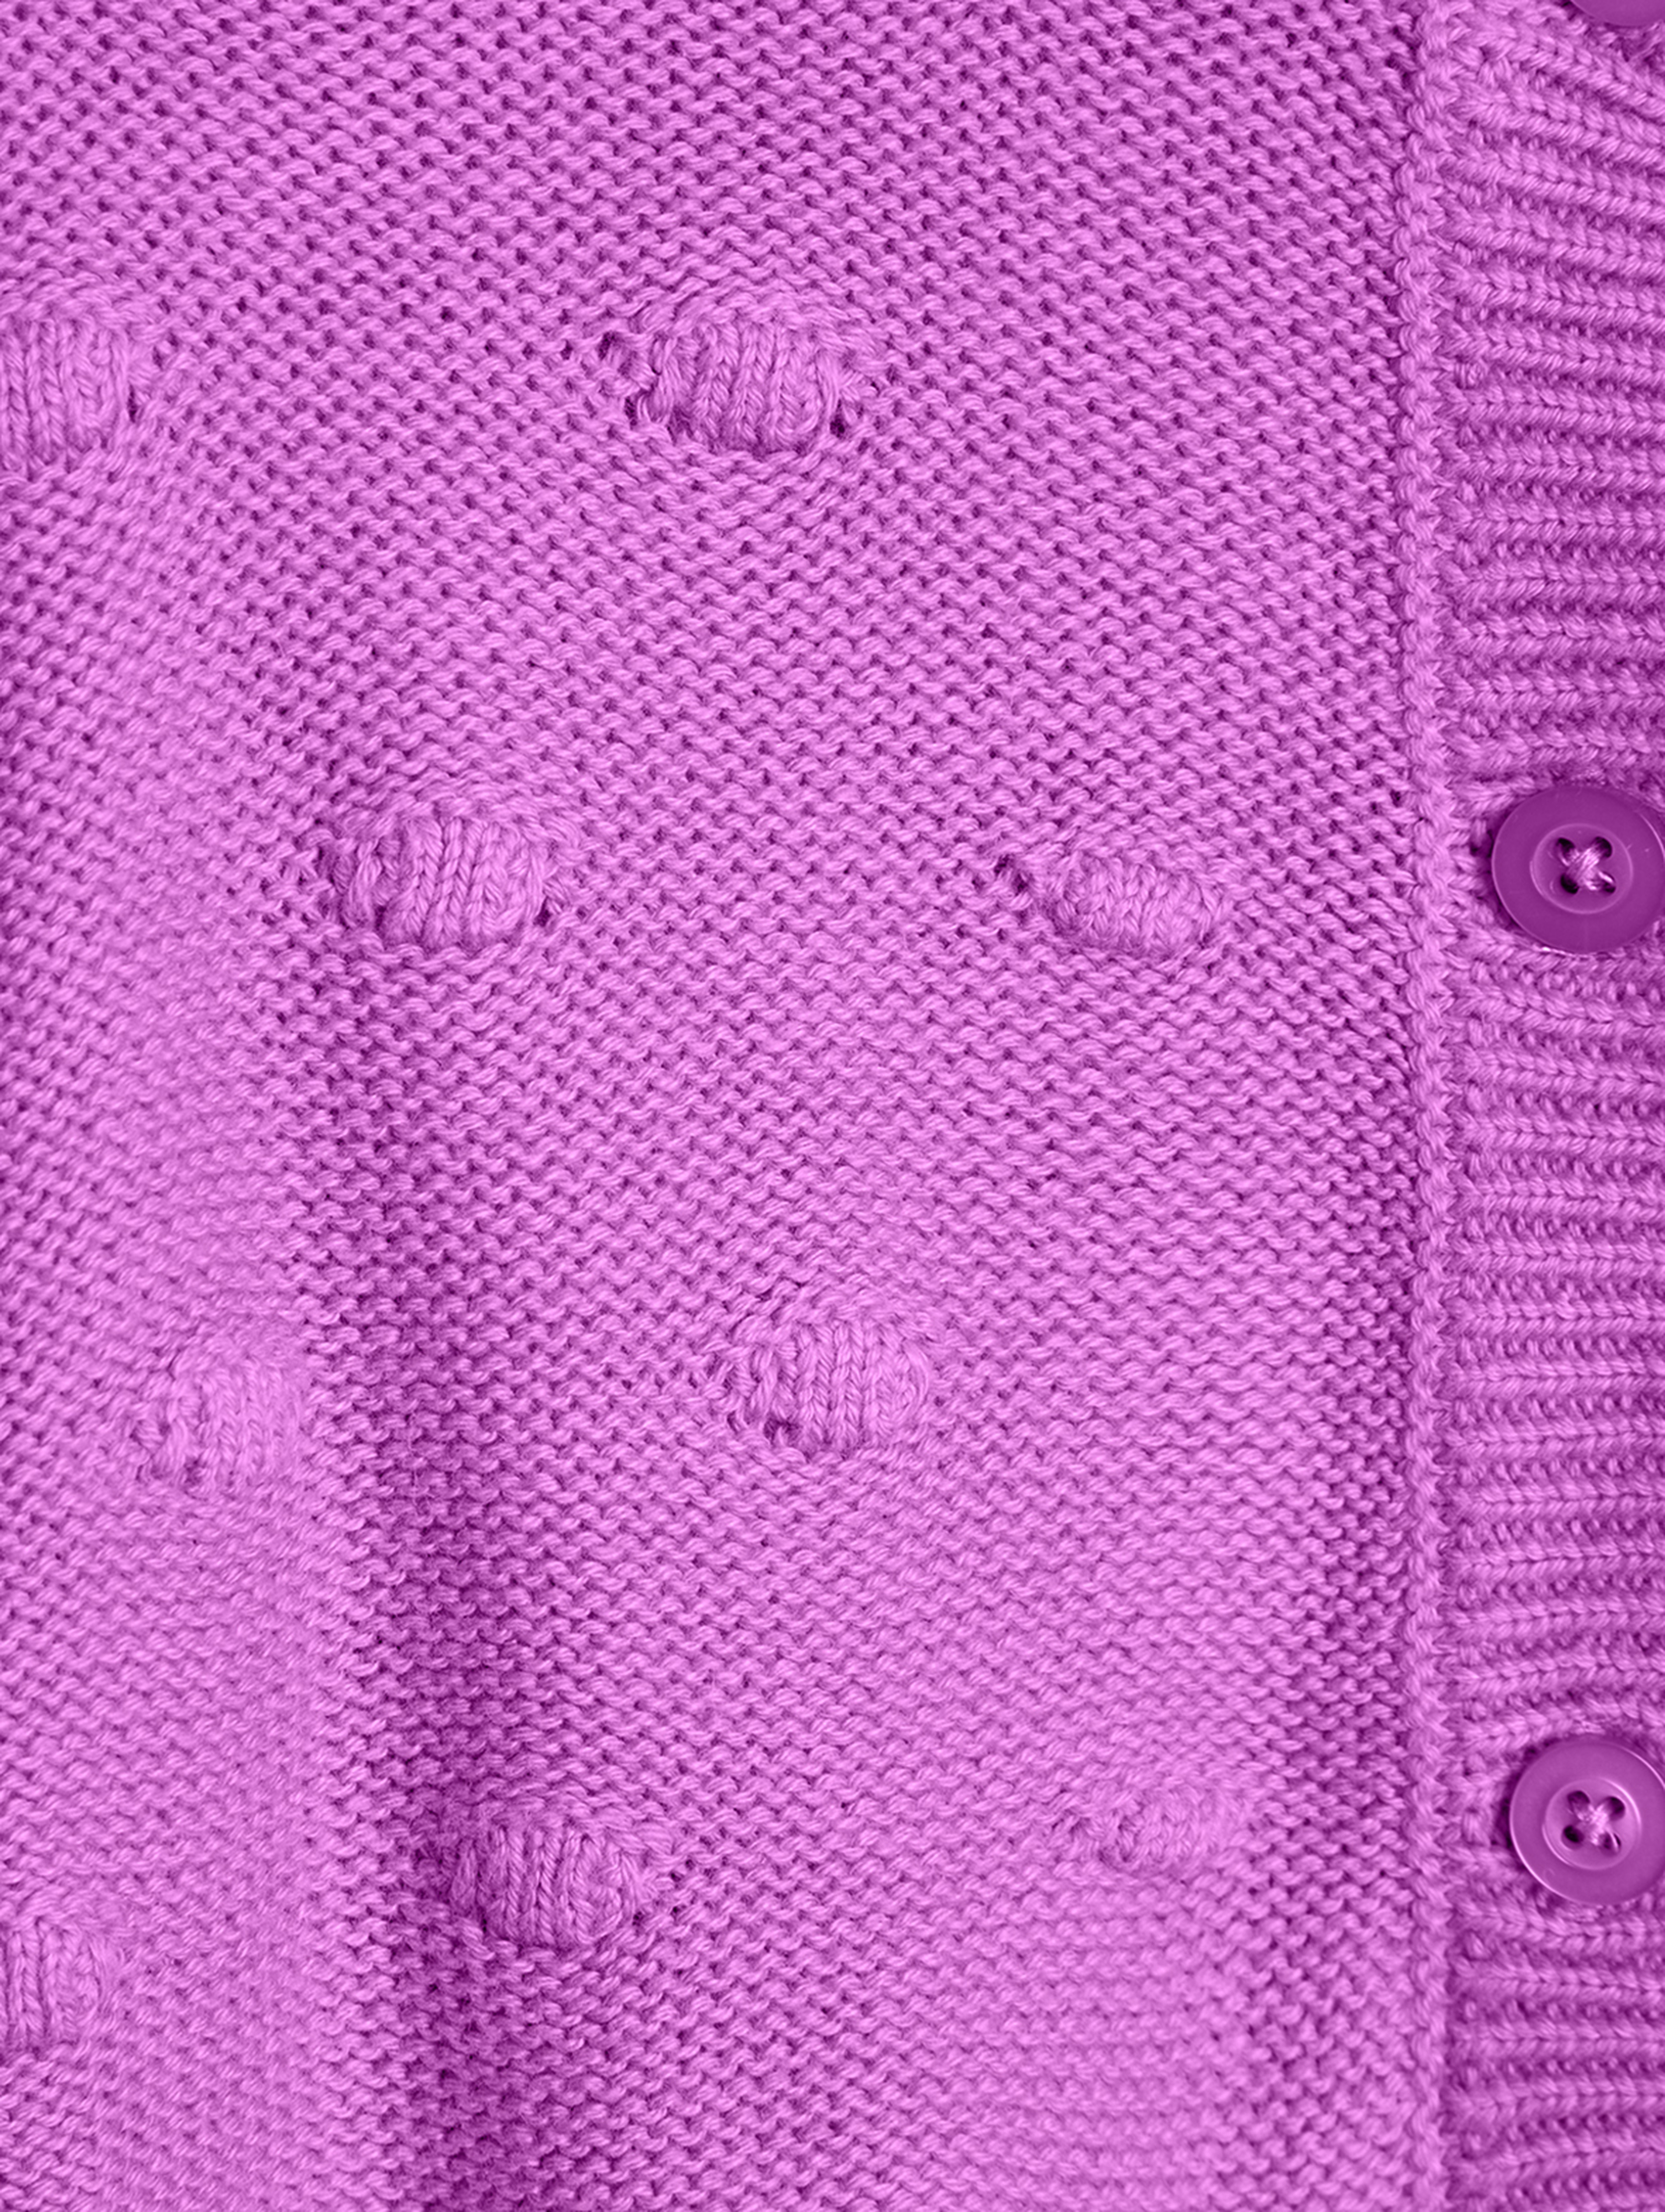 Różowy sweter dla dziewczynki - Limited Edition